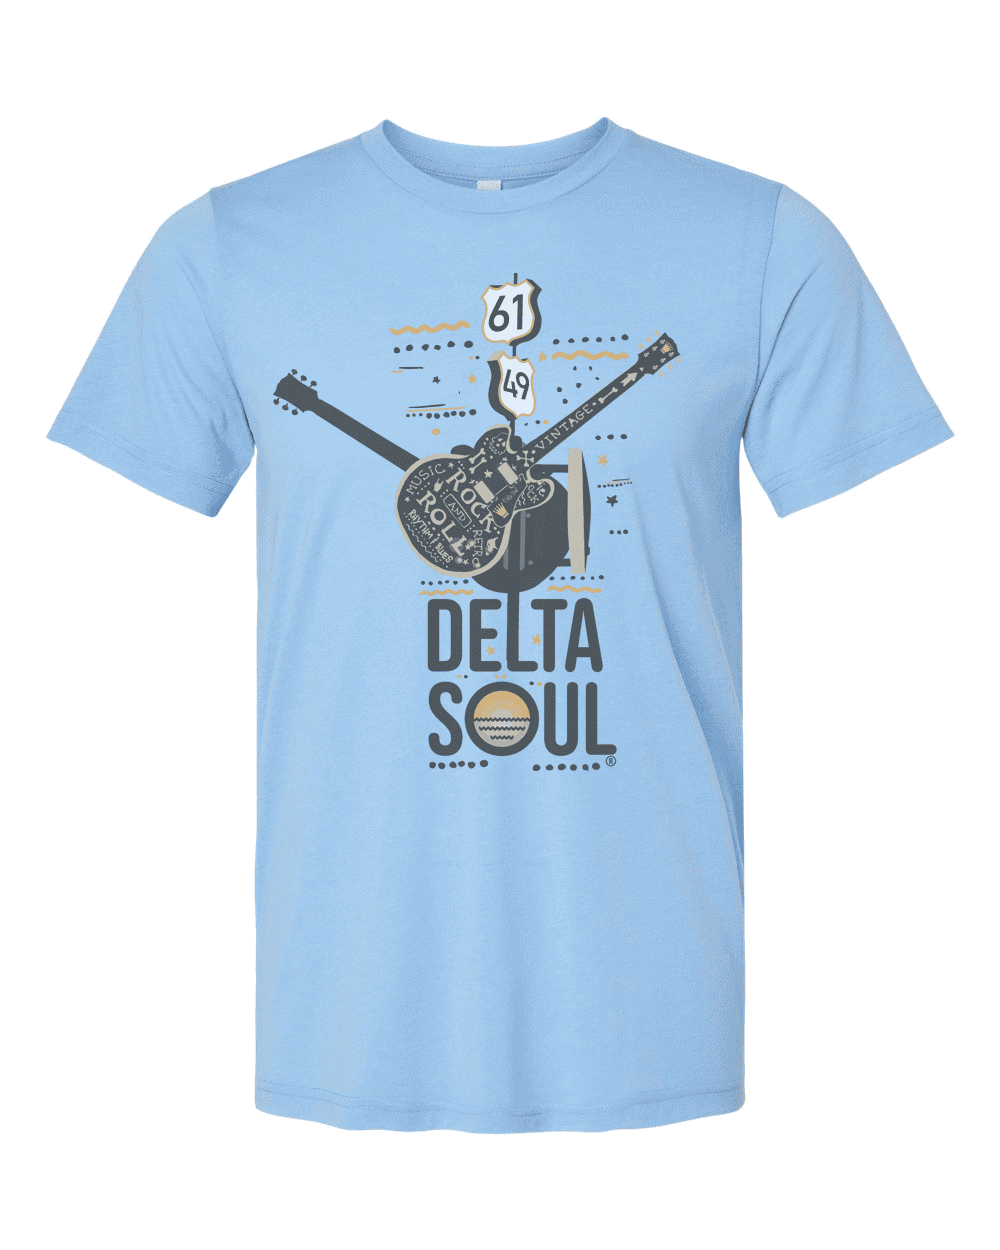 Delta Soul - Crossroads